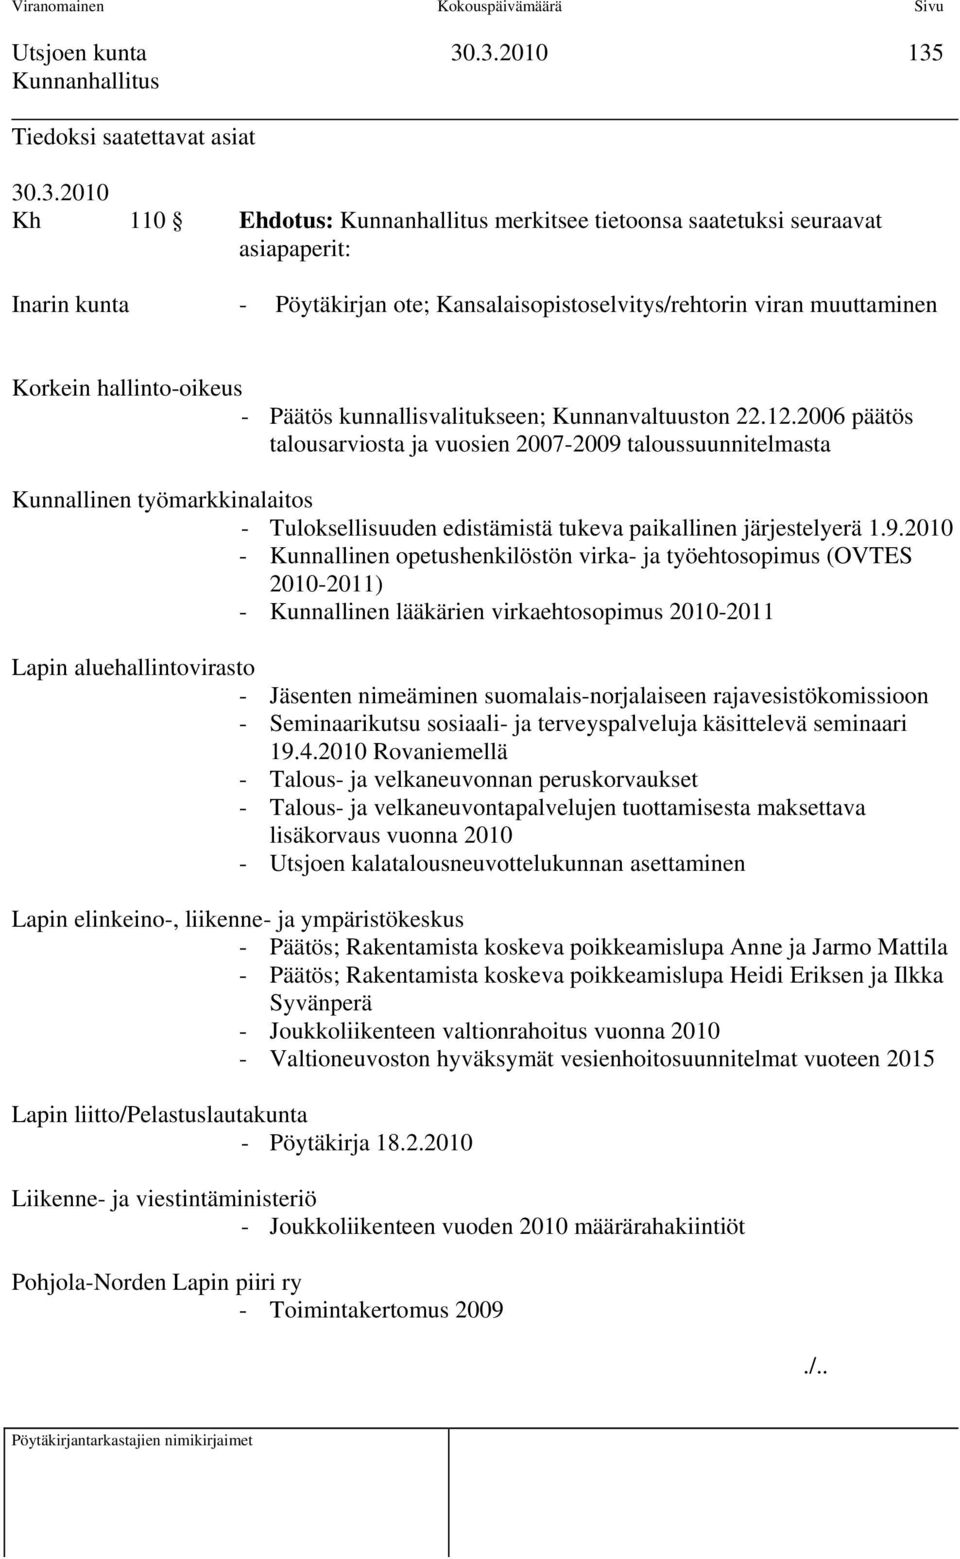 2006 päätös talousarviosta ja vuosien 2007-2009 